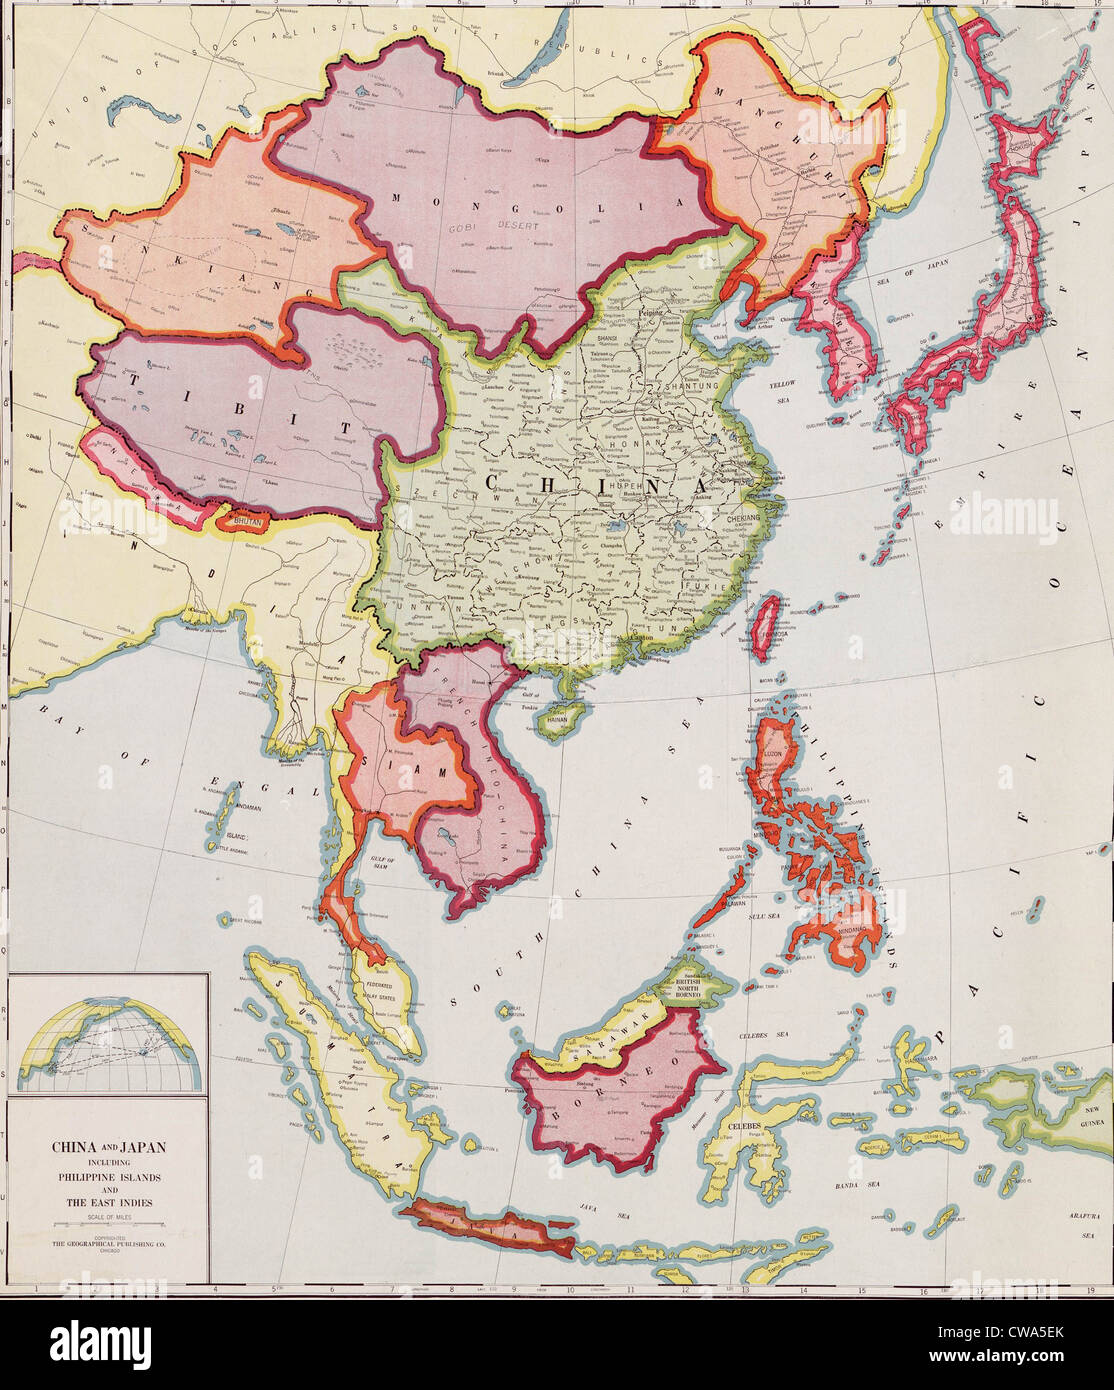 1932 El mapa de Asia oriental, mostrando unidas que se convierten en objetivos de expansión e invasión japonesa en la Guerra Sino-Japonesa Foto de stock